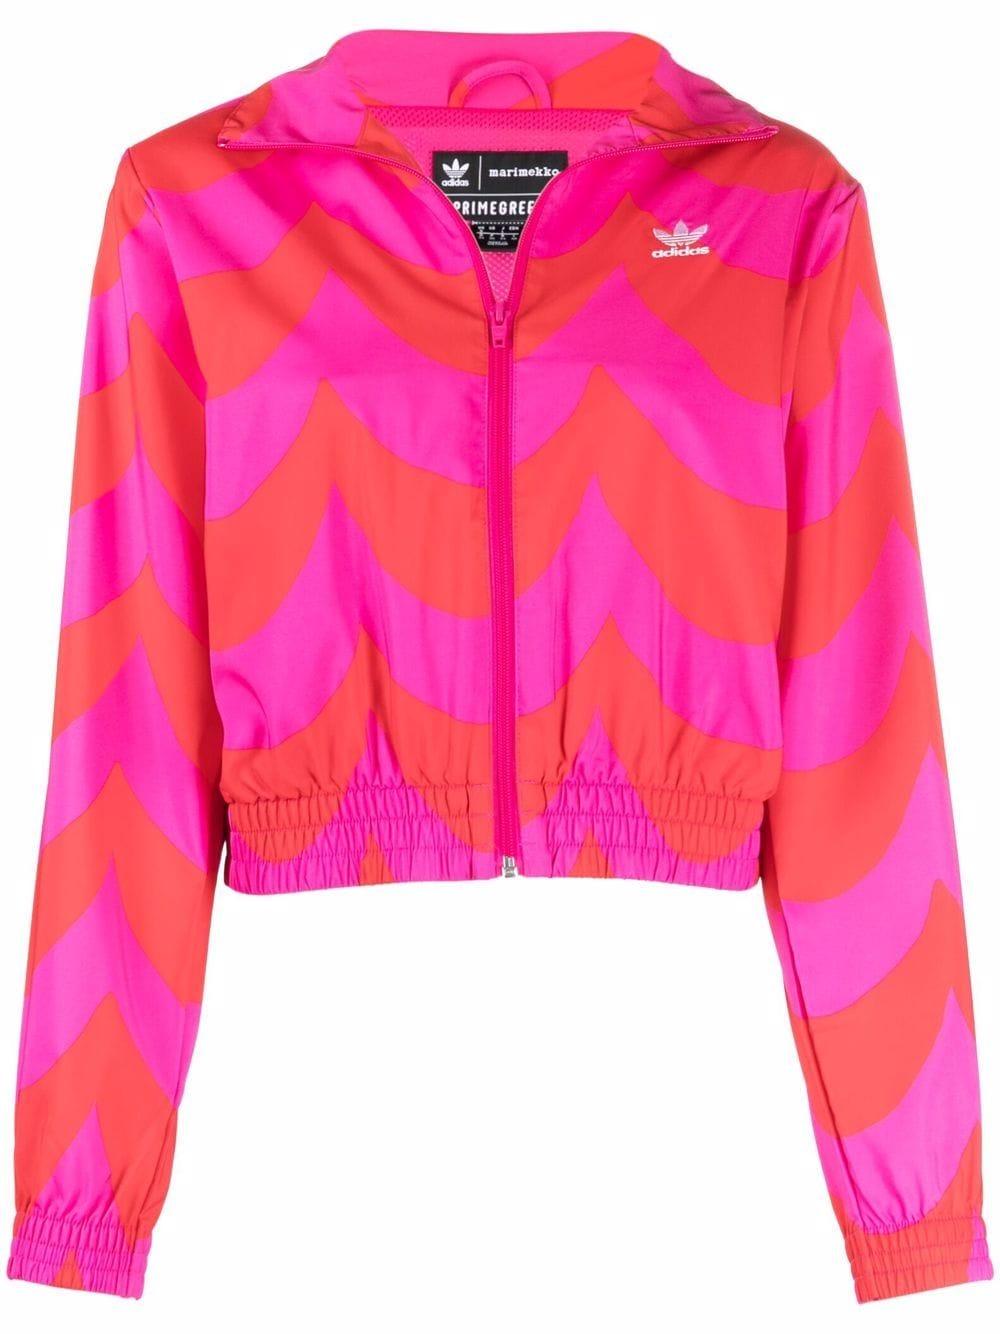 adidas X Marimekko Woven Track Jacket in Pink | Lyst Canada